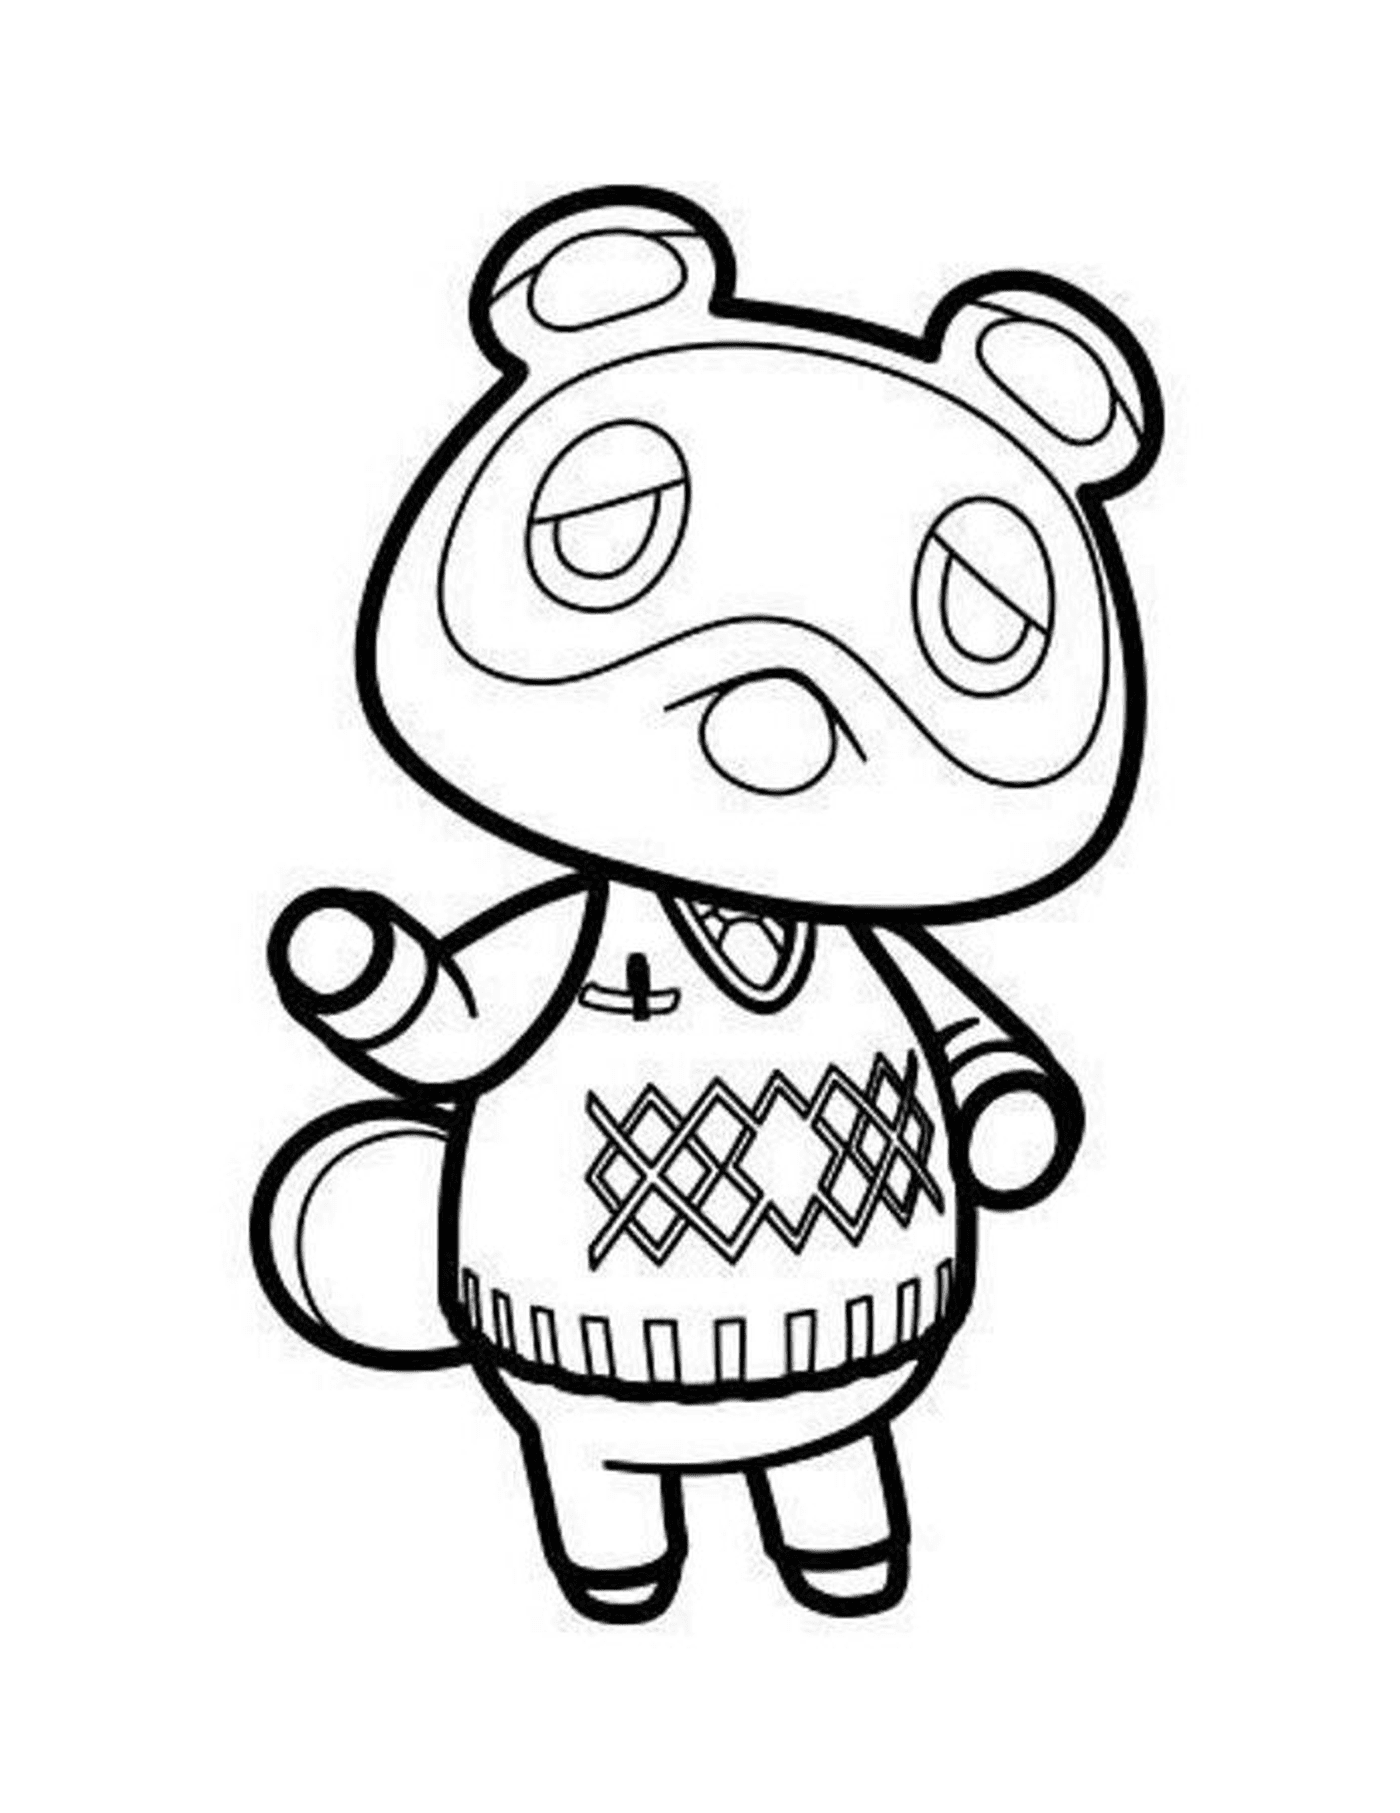  Tom Nook di Animal Crossing, animale con maglione 